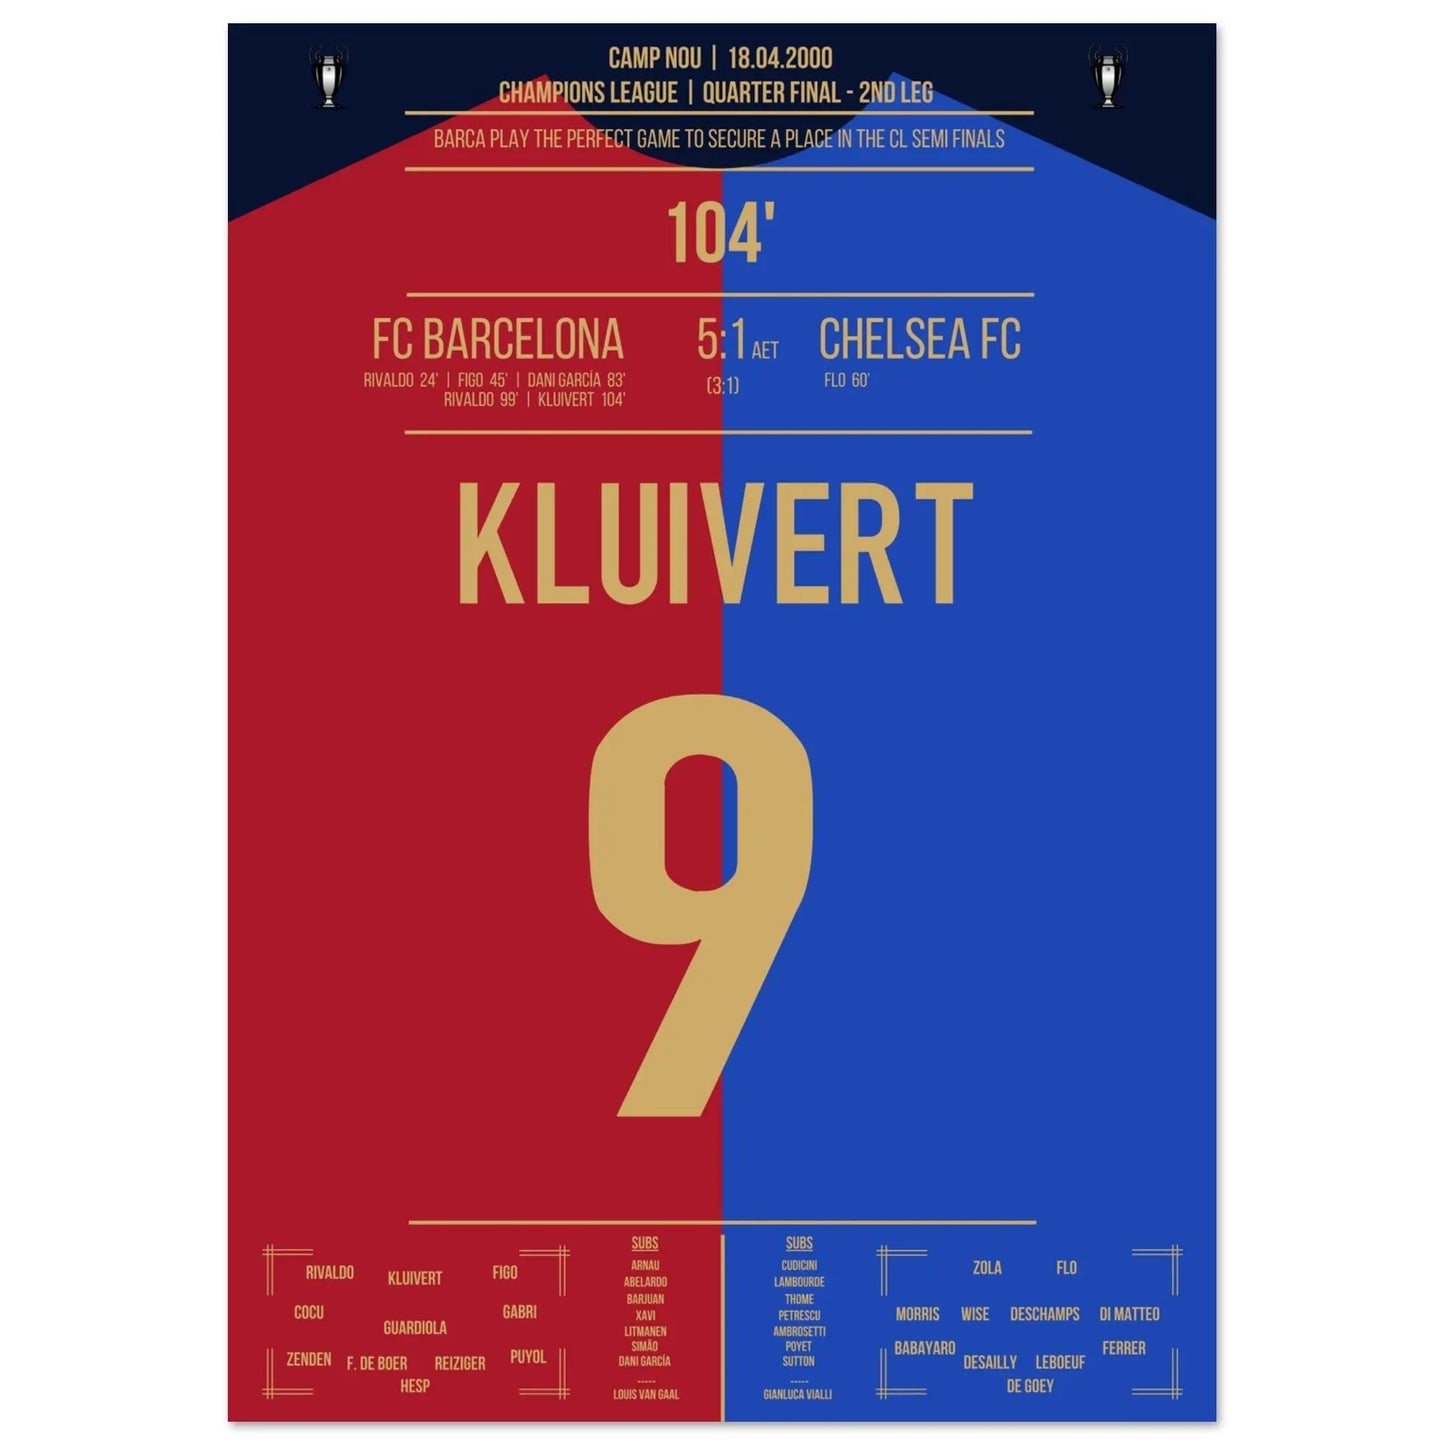 Kluivert's doelpunt in Barca's "Remontada" tegen Chelsea in 2000